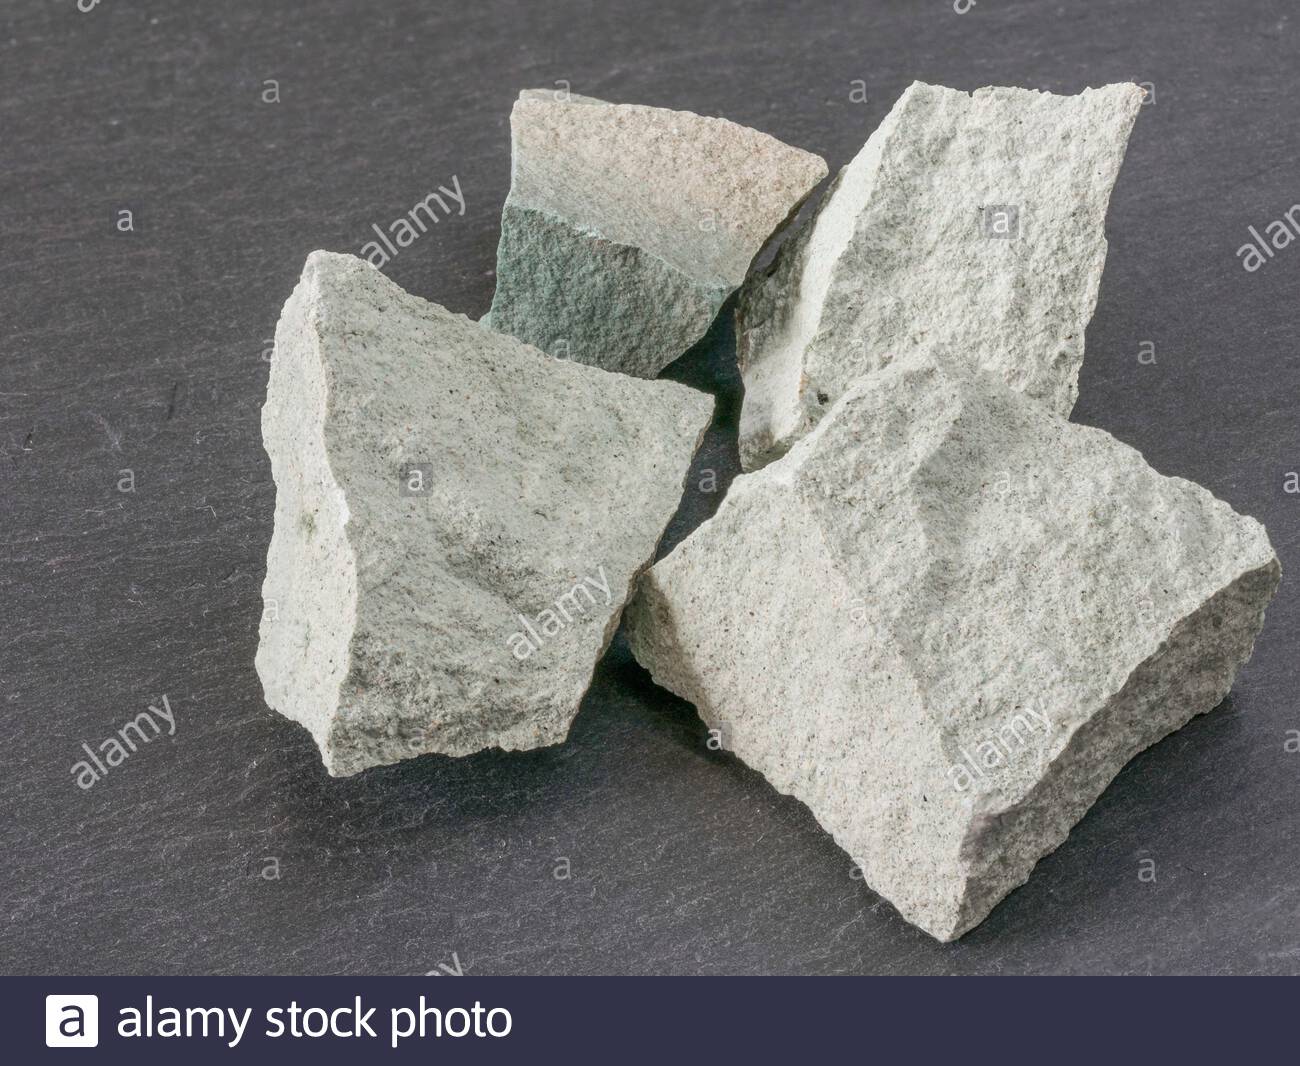 Zeolite Stones For Sale